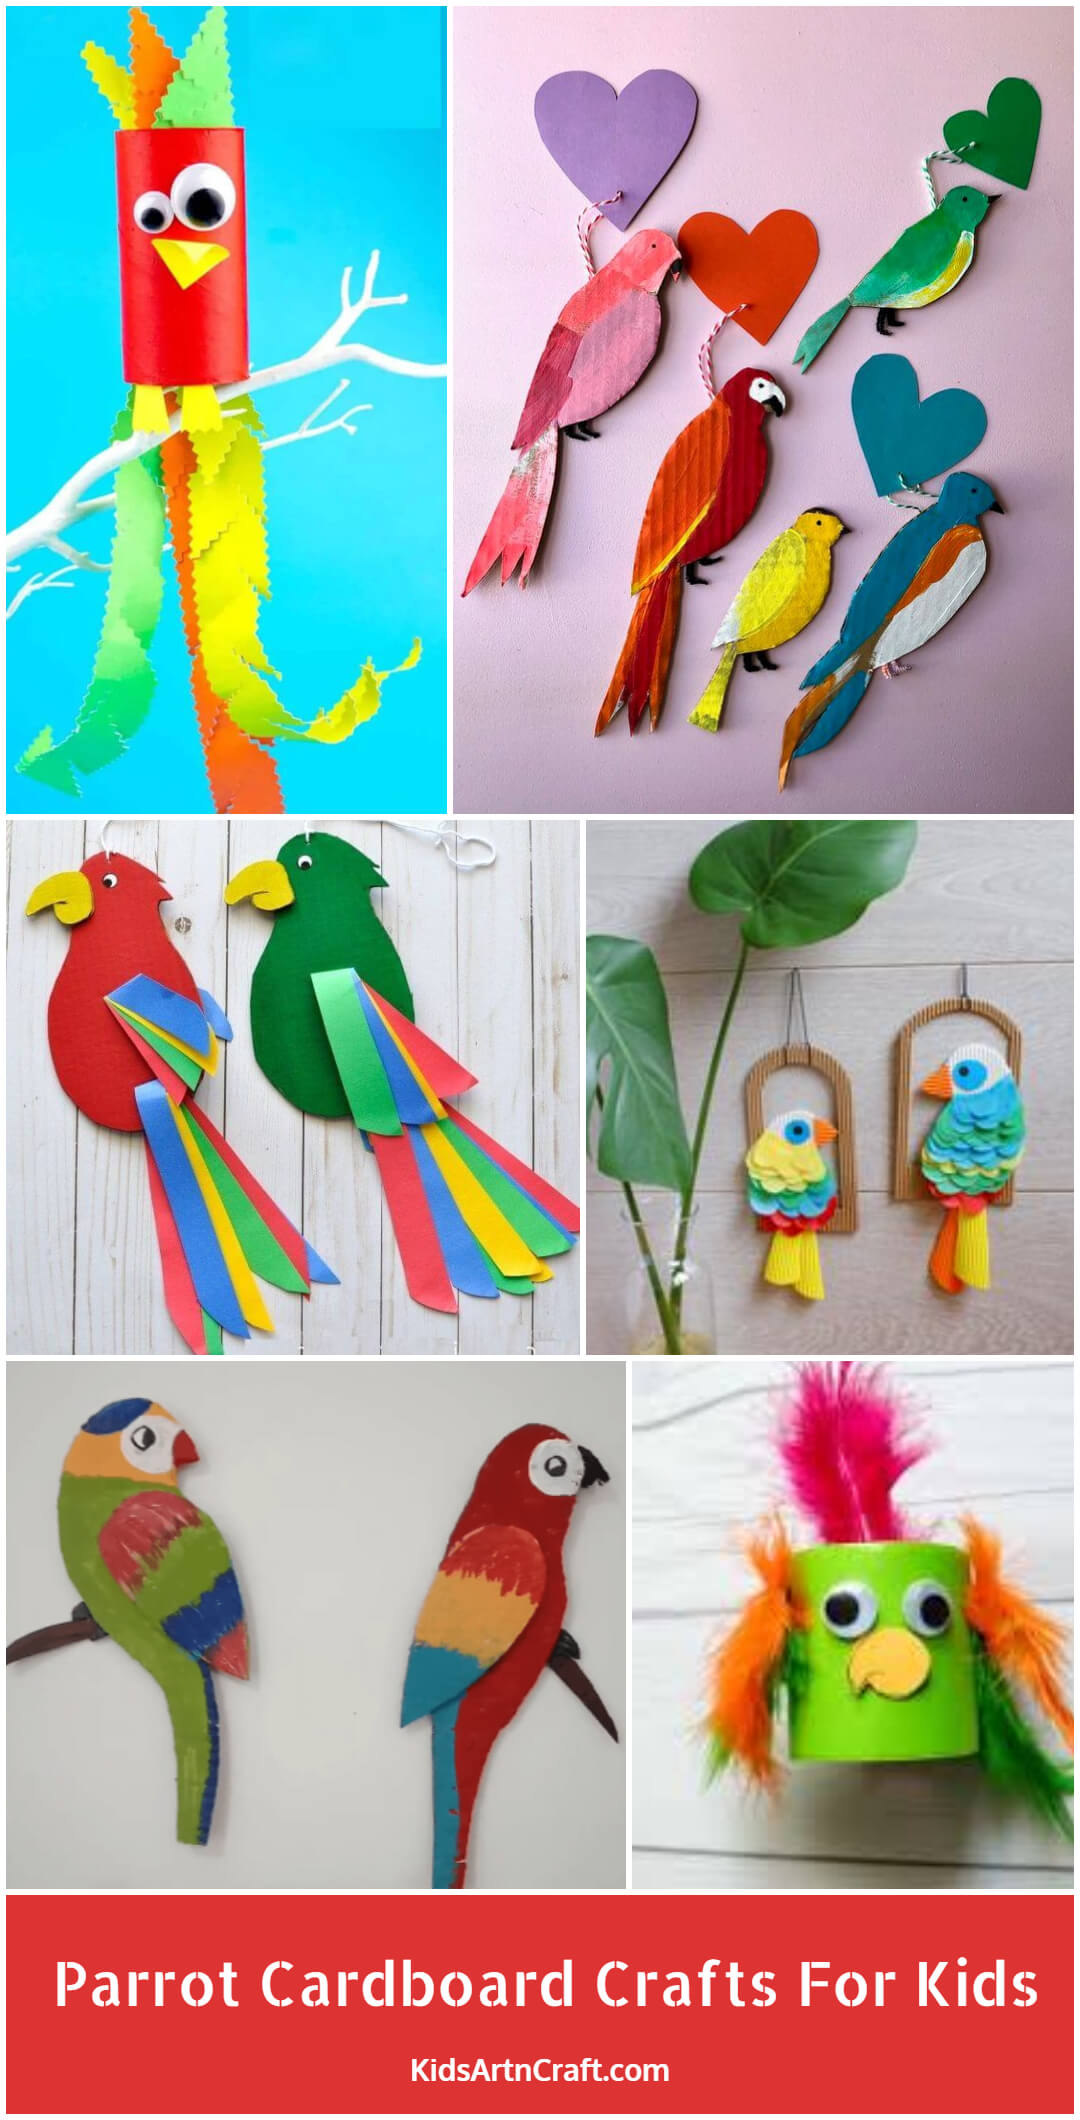 Parrot Cardboard Crafts For Kids